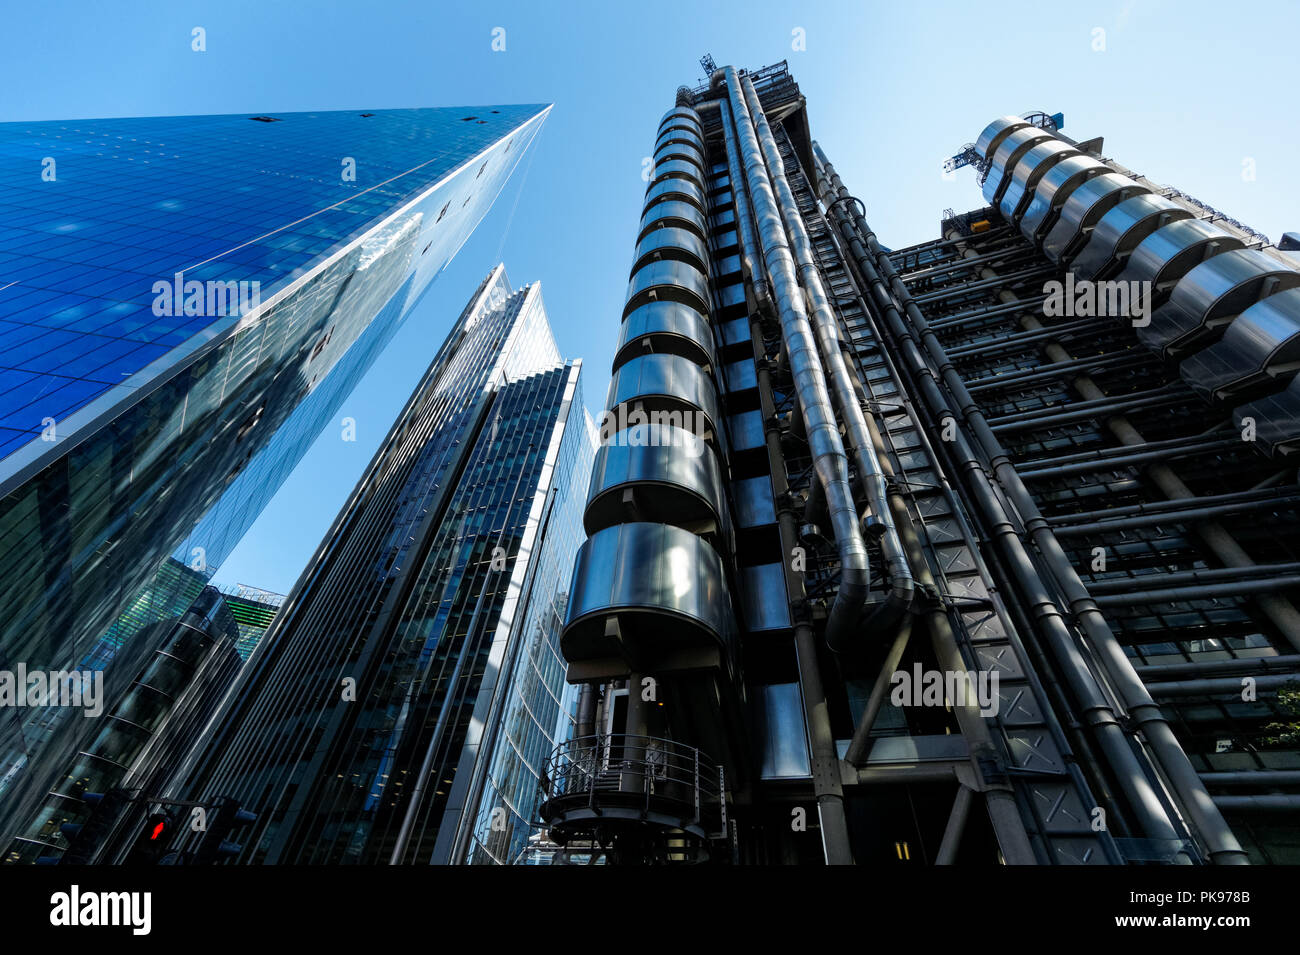 Lloyd's edificio, l'edificio Willis e Il grattacielo di bisturi, commerciali grattacieli in London, England Regno Unito Foto Stock